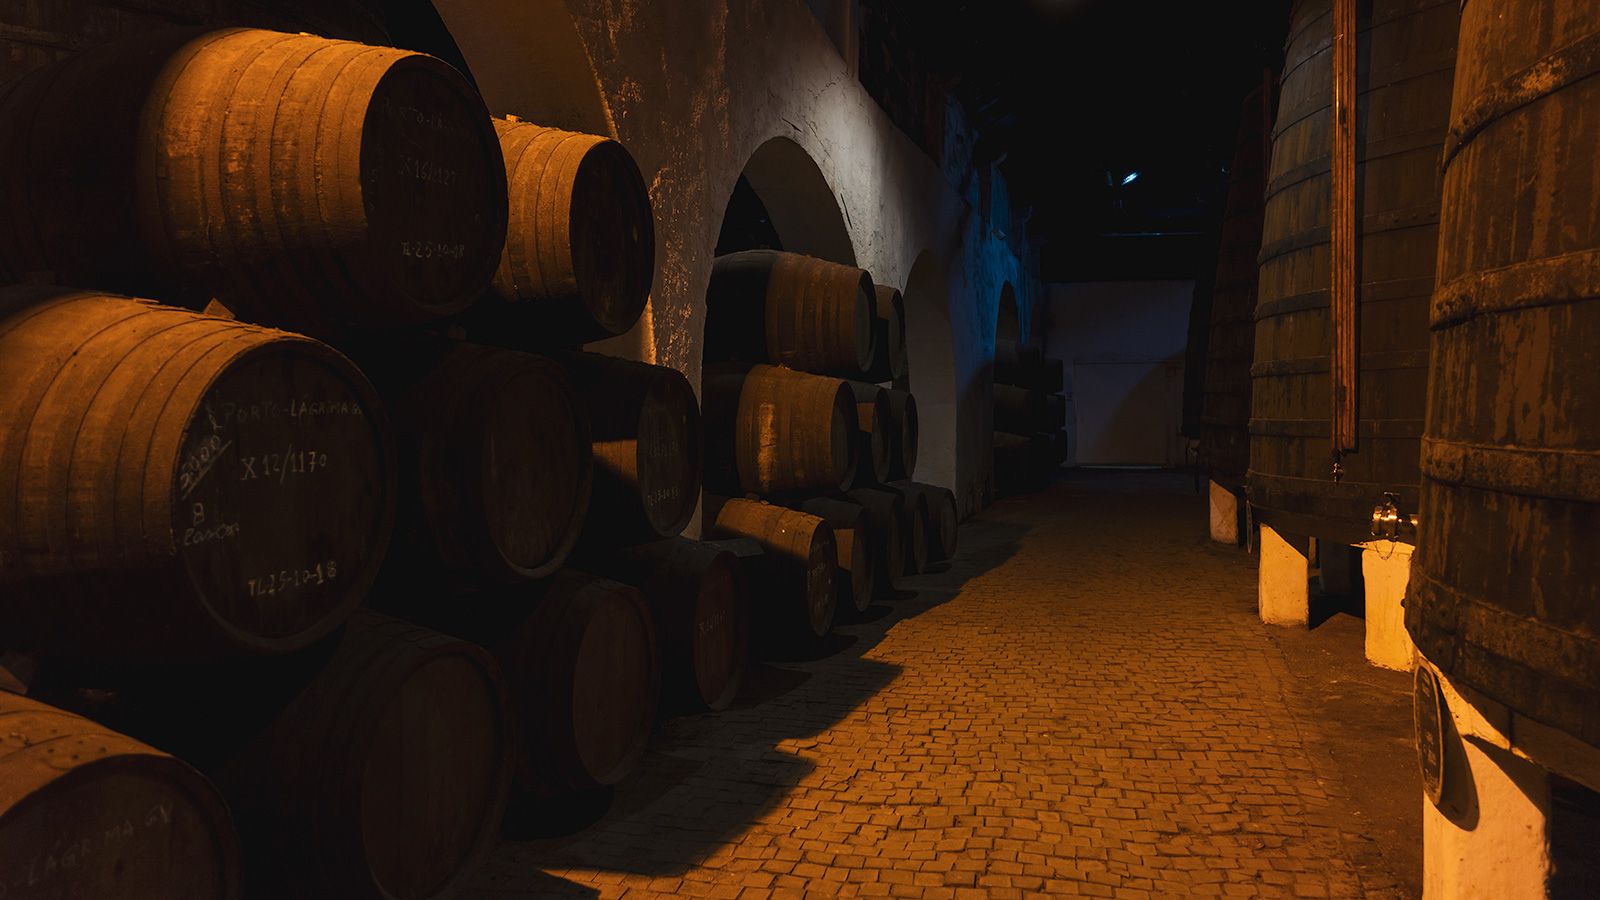 Ferreira Port Wine Cellar, Porto, Portugal